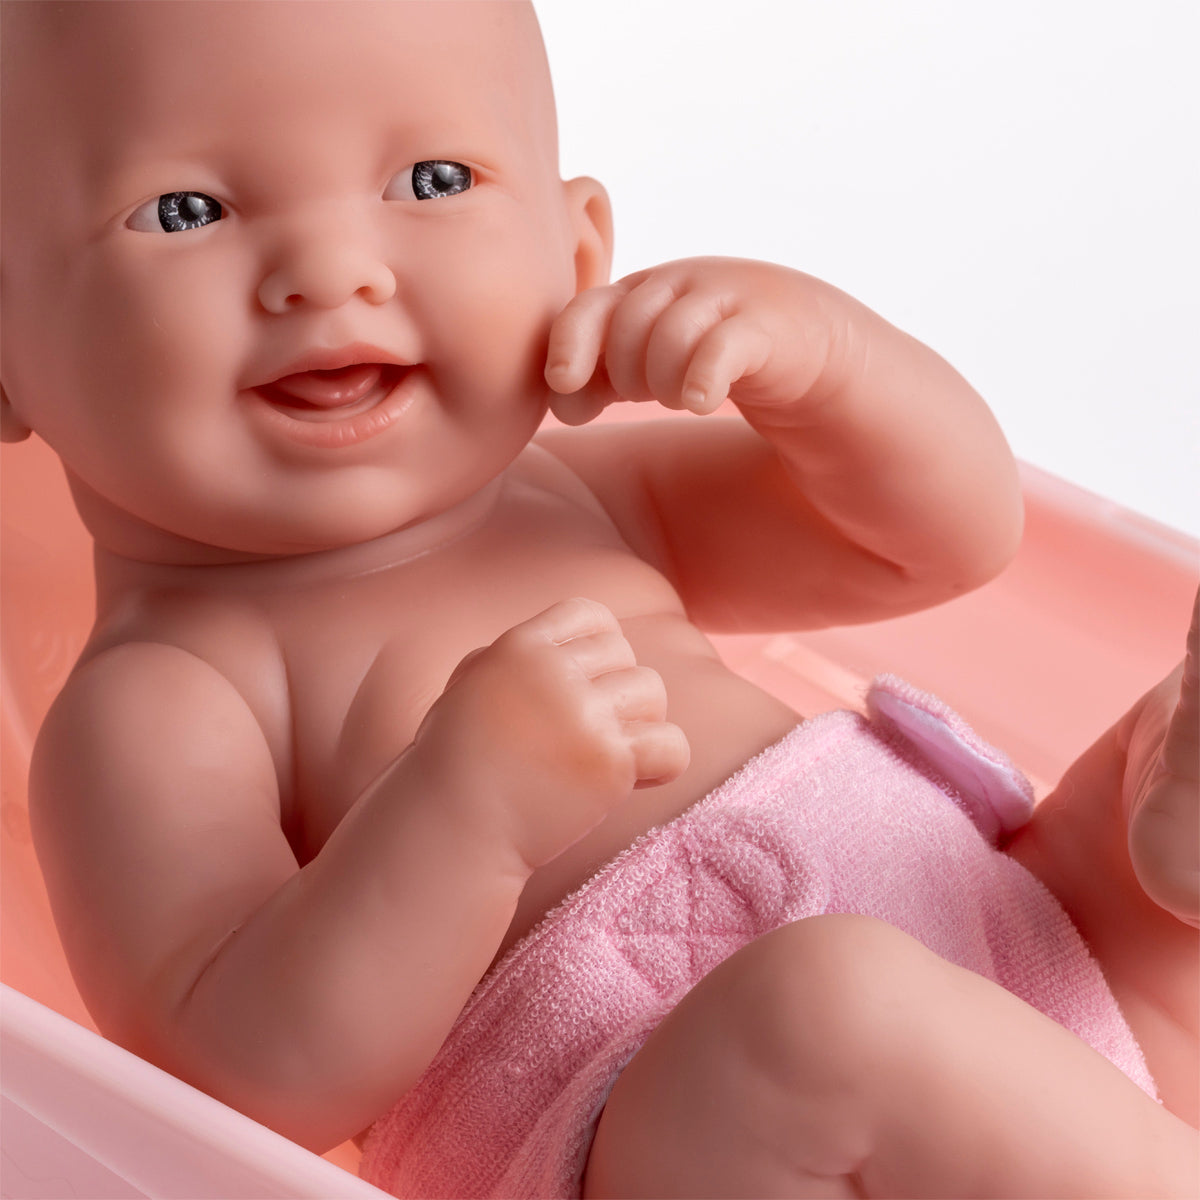 Bathtub for baby doll 12/14